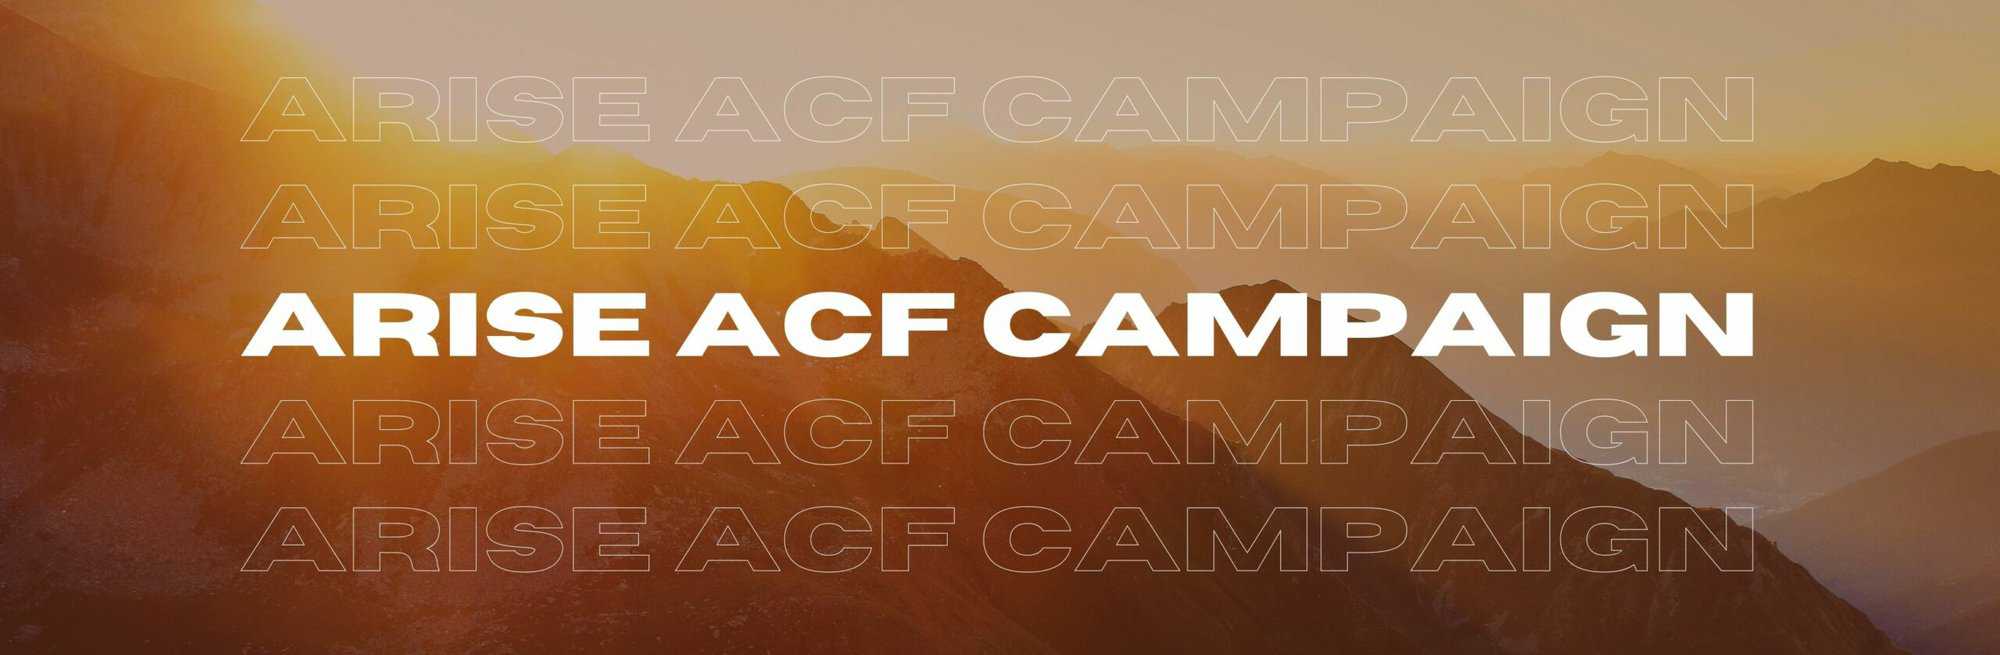 Arise ACF Campaign